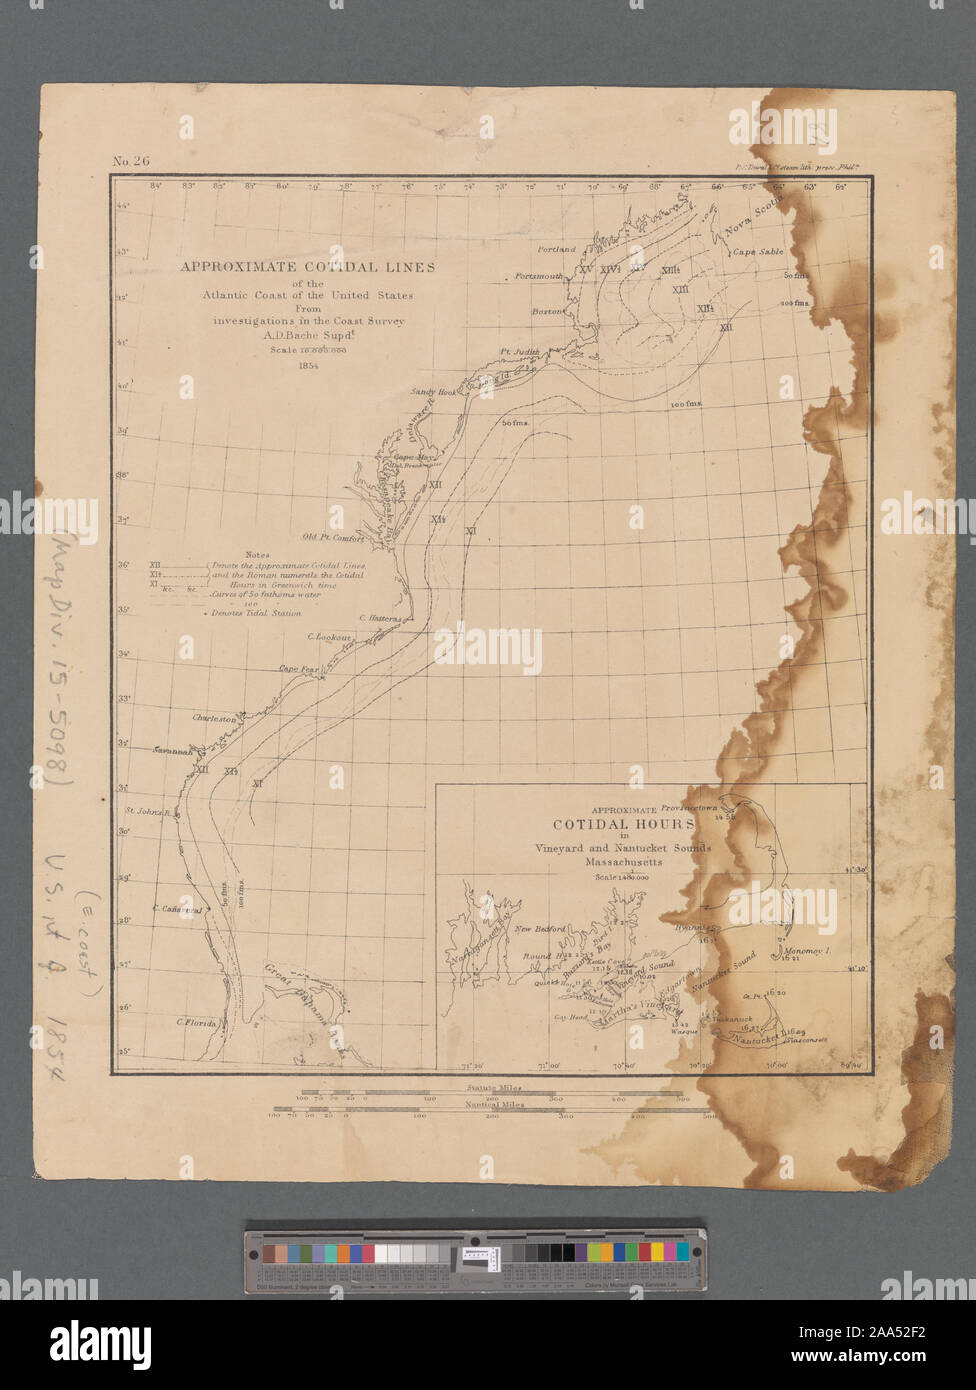 En médaillon : cotidal heures approximatif dans sons Vineyard et Nantucket, Massachusetts. Cartographie de la Nation (NEH, 2015-2018) ; Durée approximative de lignes cotidal la côte atlantique des États-Unis à partir des enquêtes dans l'Enquête sur la côte Banque D'Images